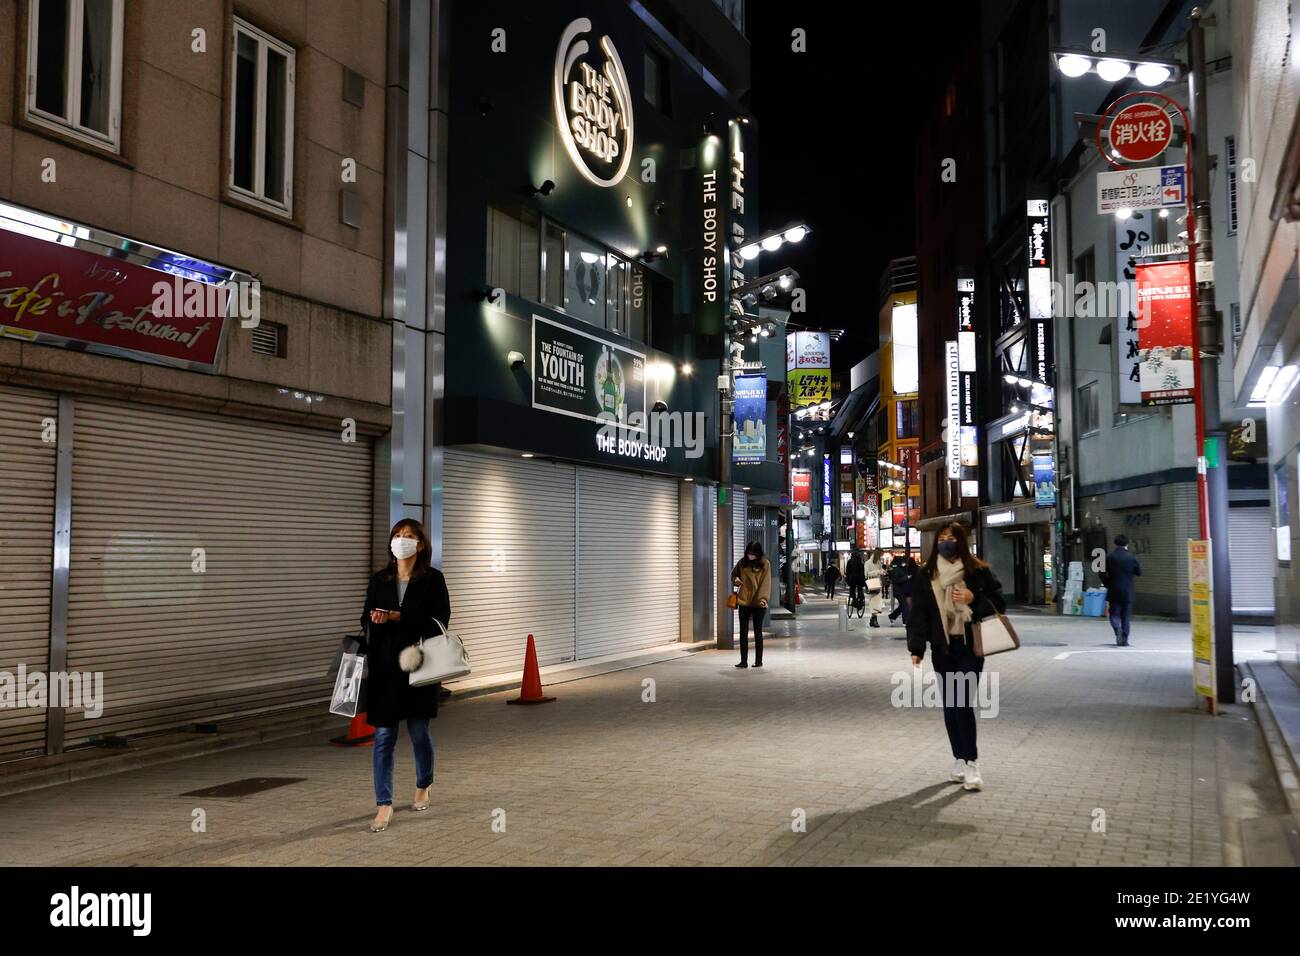 Tokio, Japan. Januar 2021. Weniger Menschen als normal werden in Shinjuku Einkaufsviertel gesehen, nachdem die Betriebe um 20 Uhr geschlossen, um die COVID-19 Infektionen zu stoppen. Tokio meldete am 10. Januar 1,494 neue COVID-19-Fälle; nach vier Tagen mit über 2,000 Fällen sank die Zahl der täglichen Infektionen zum ersten Mal, nachdem der Ausnahmezustand in den Präfekturen Tokio, Kanagawa, Saitama und Chiba ausgerufen wurde. Quelle: Rodrigo Reyes Marin/ZUMA Wire/Alamy Live News Stockfoto